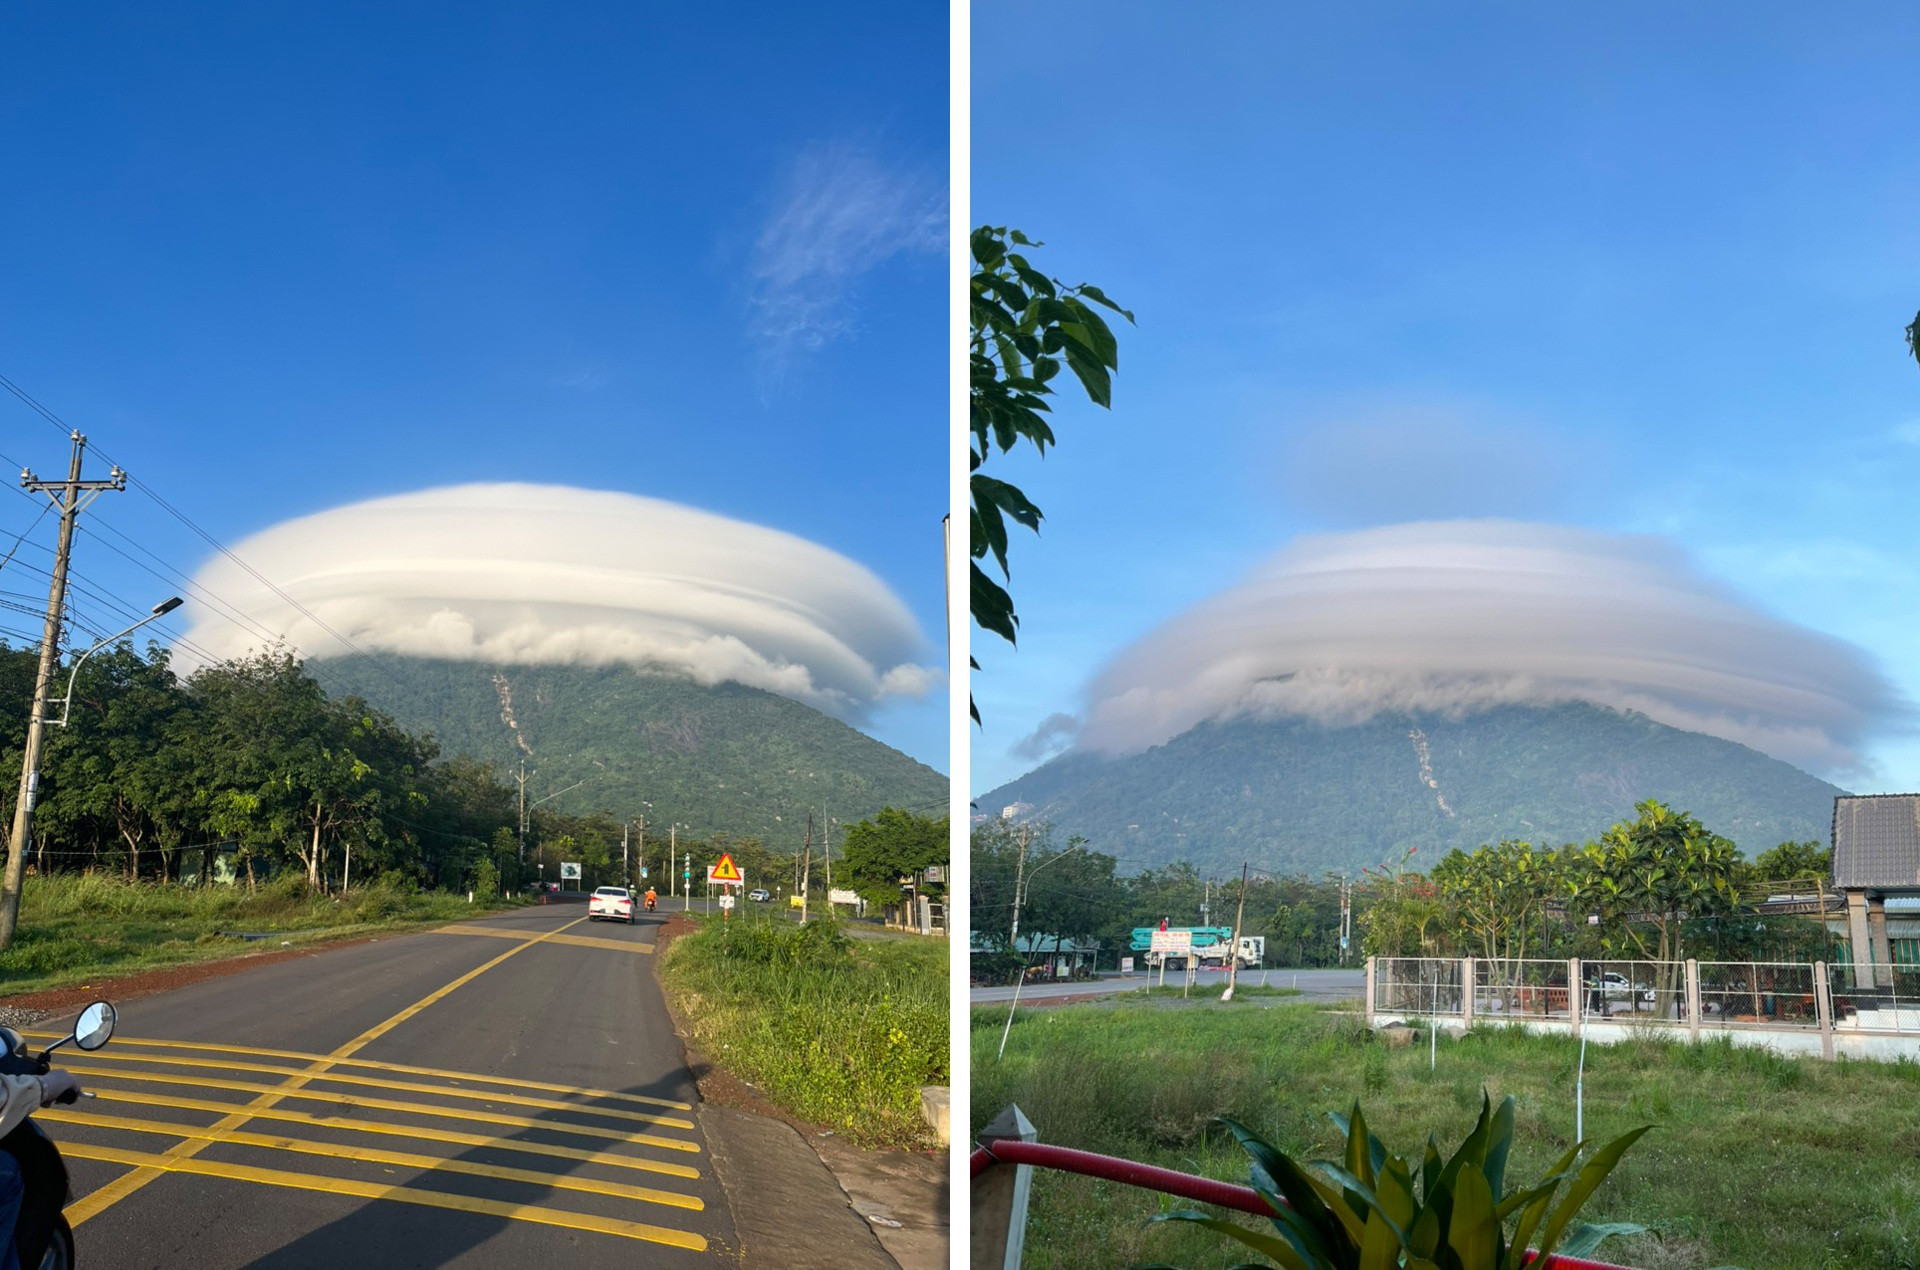 Sự thật về đám mây có hình dạng như đĩa bay khổng lồ trên đỉnh núi Bà Đen - 3